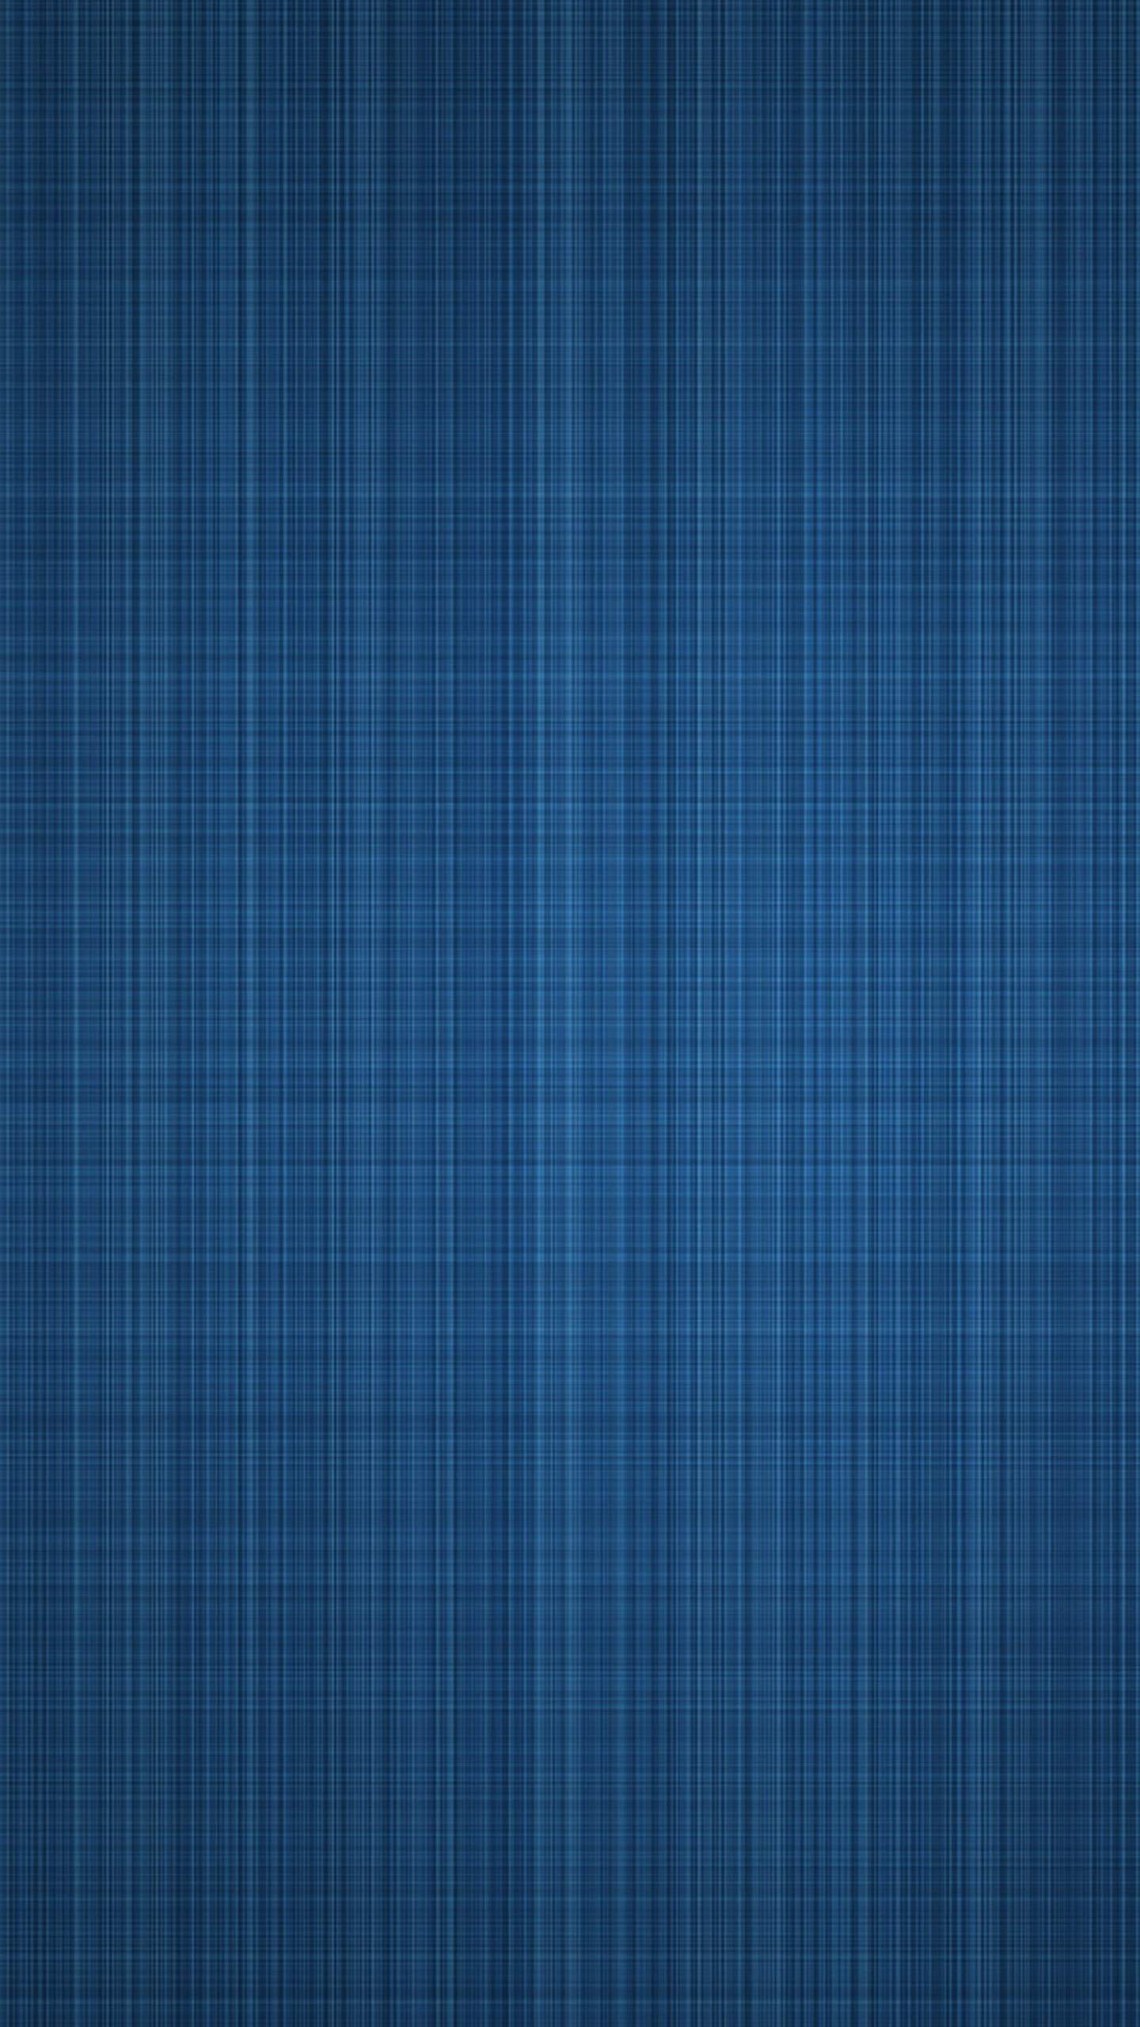 サムスンギャラクシーグランドプライムプラス壁紙,青い,チェック柄,パターン,ターコイズ,タータン